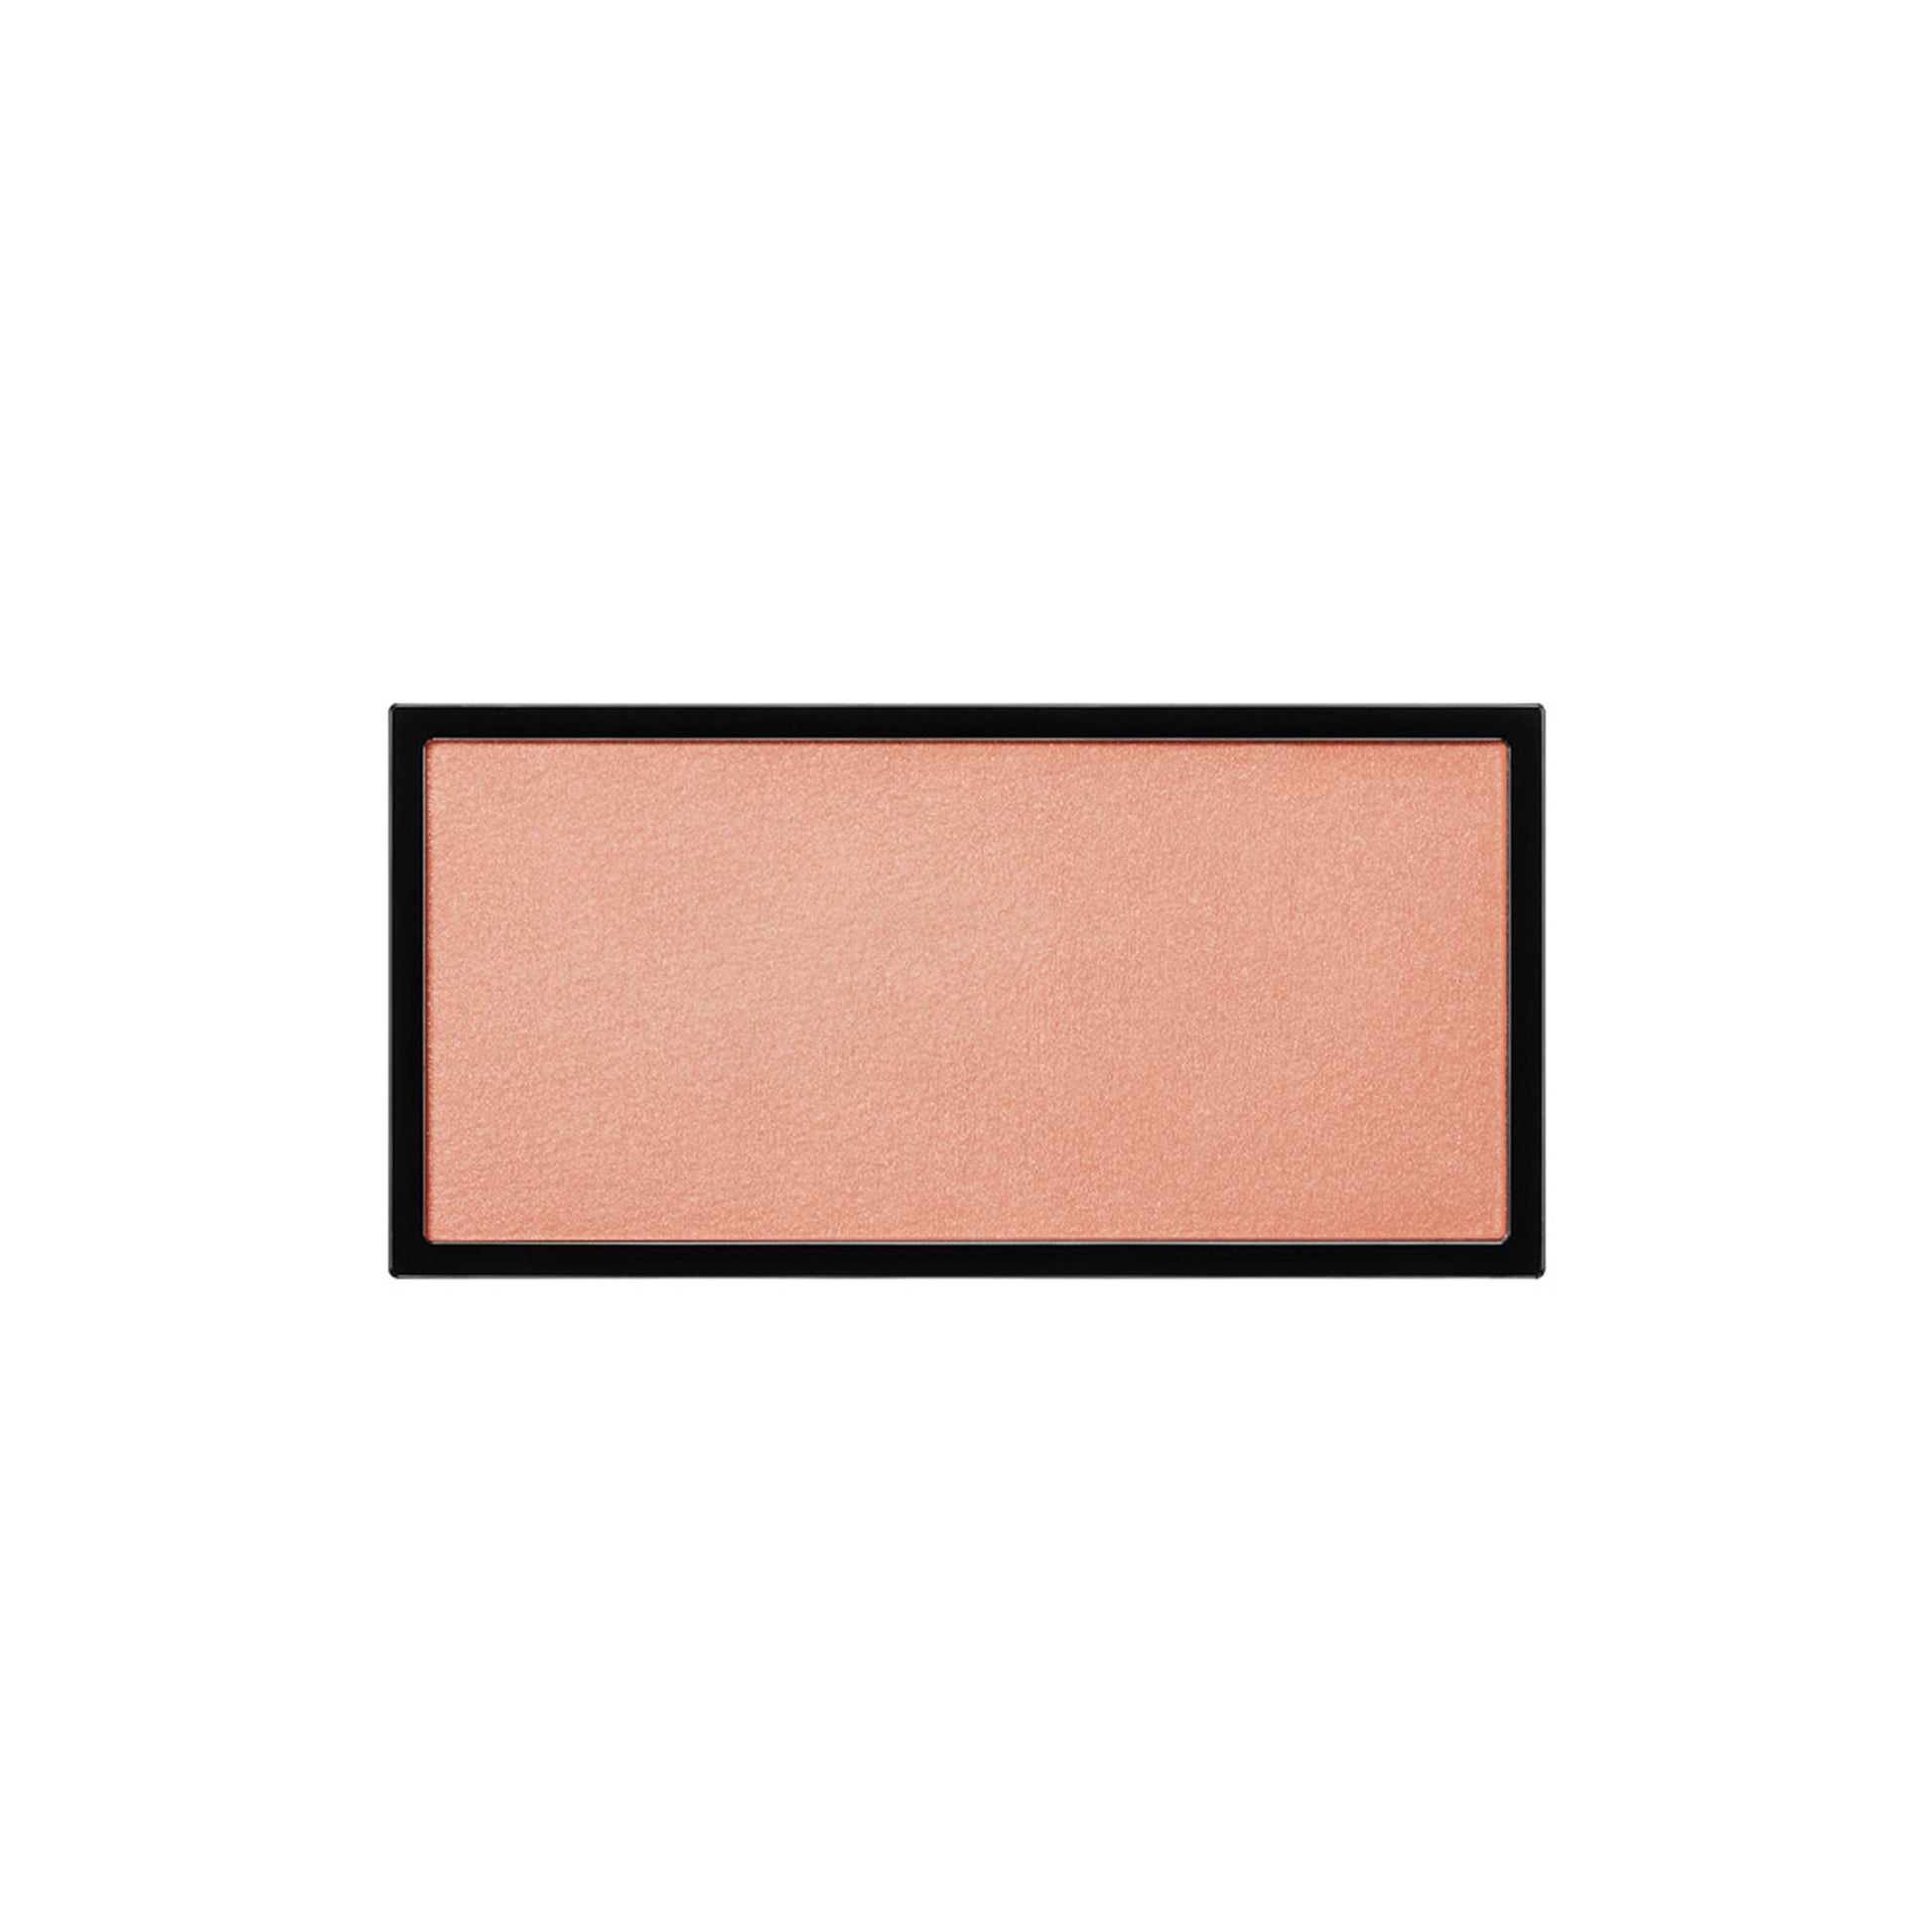 A rectangle shaped powder blush pan in a soft peach shade